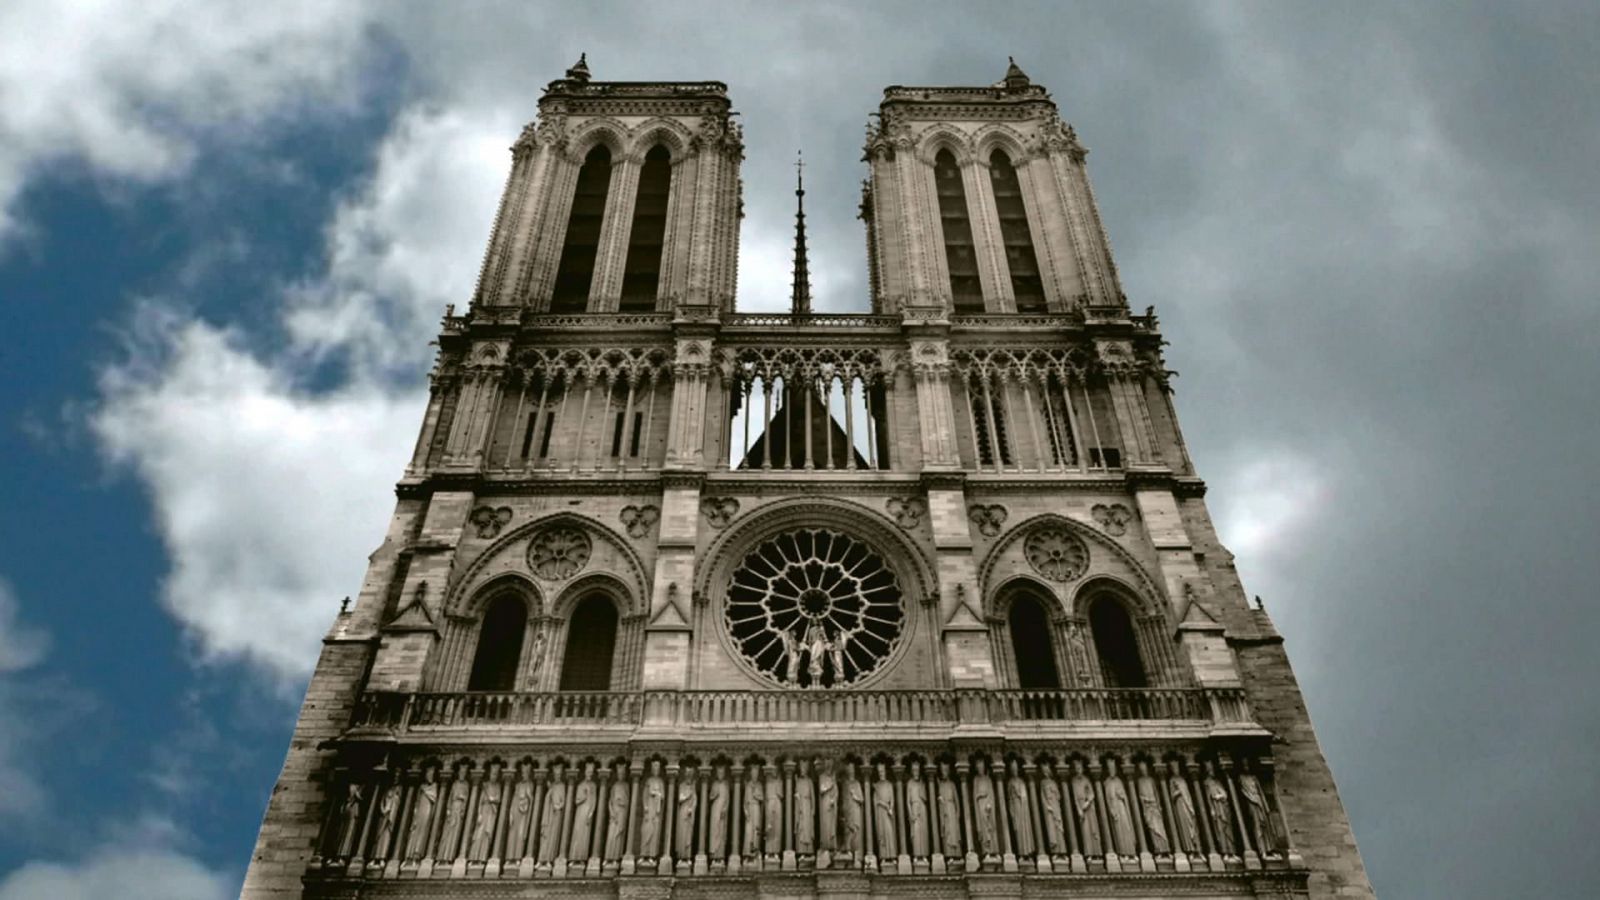 Ingeniería antigua - Episodio 5: Secretos de Notre Dame - Documental en RTVE